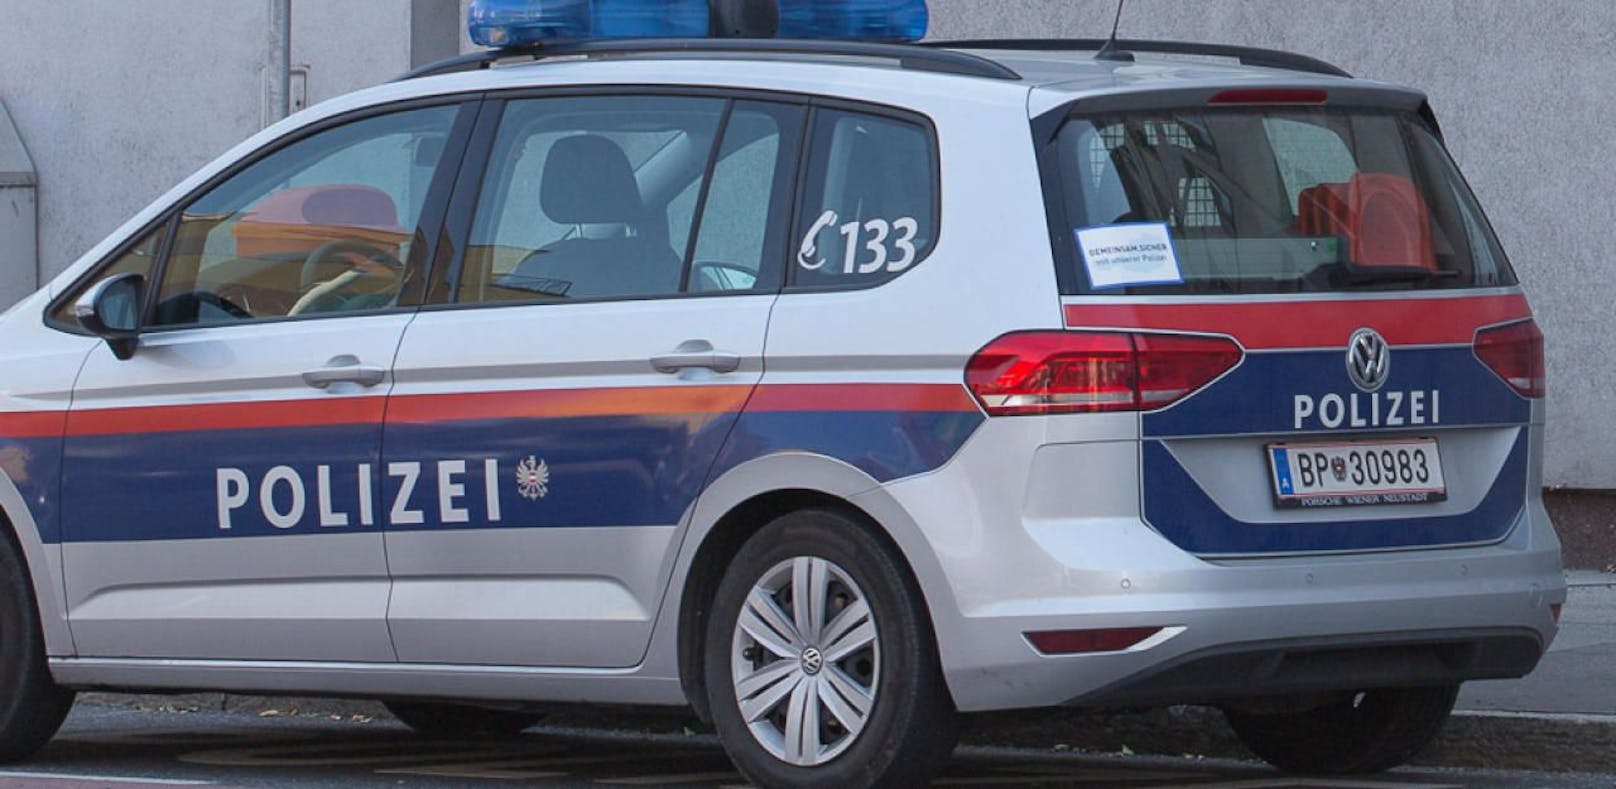 Die Polizei ermittelt nach dem Fund eines mysteriösen Schreibens in Stinatz.